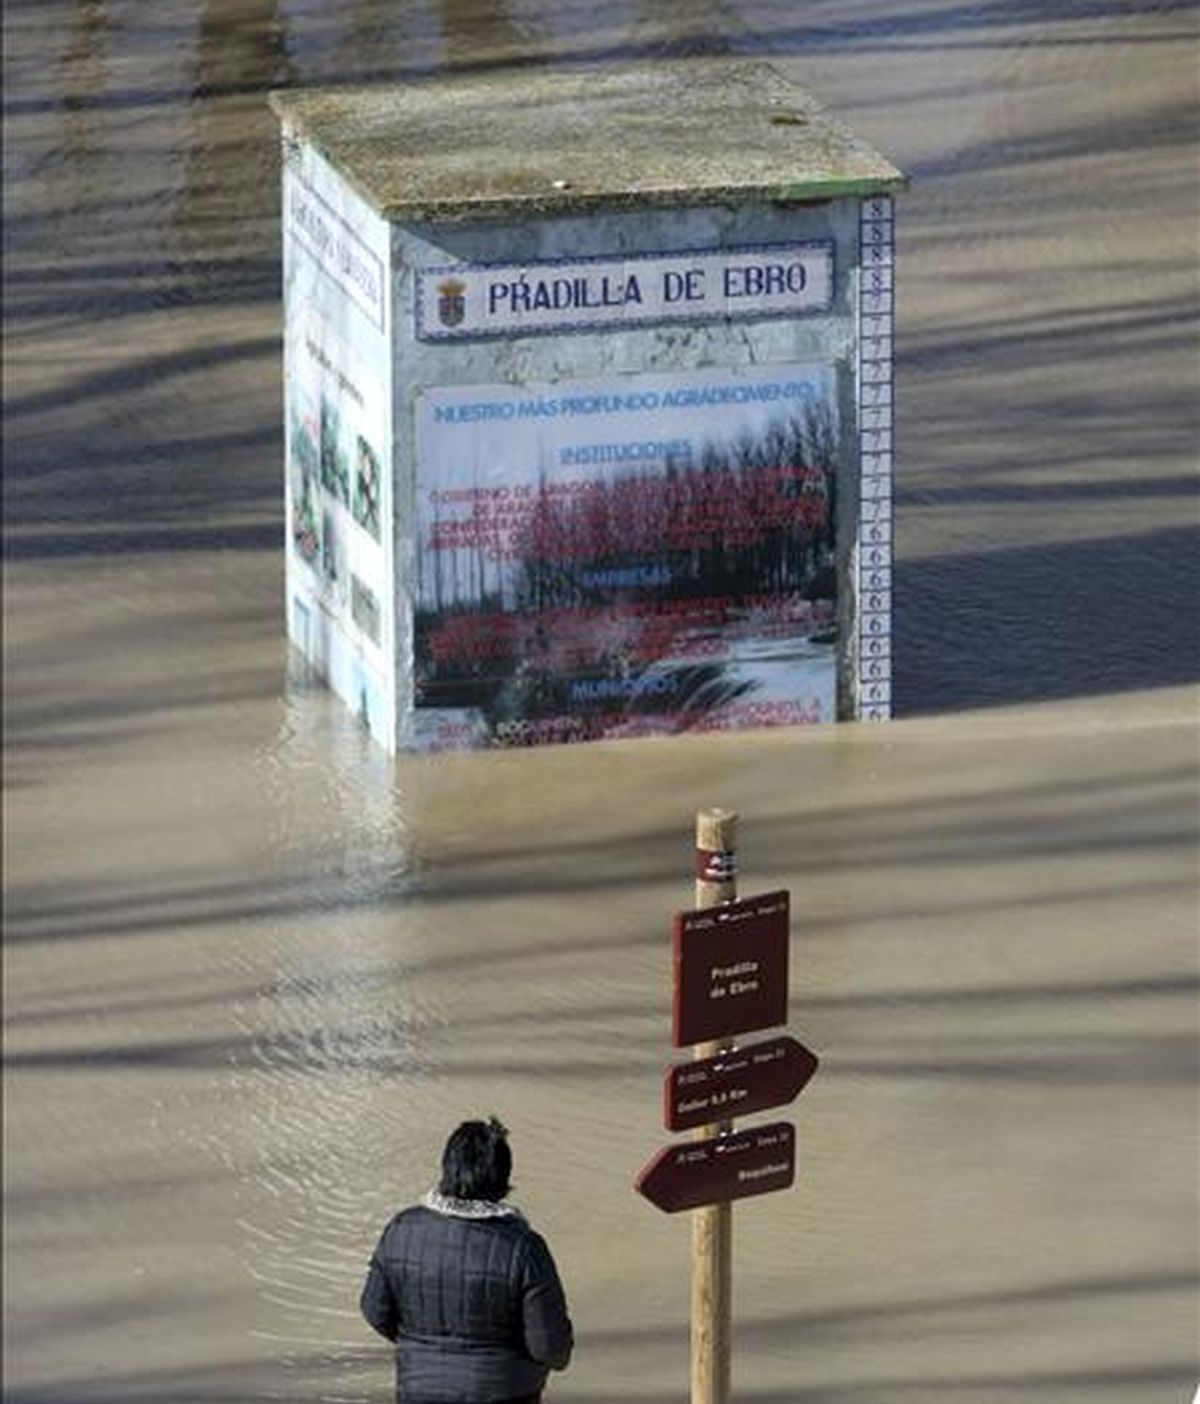 Una vecina de la localidad zaragozana de Pradilla contempla la crecida del rio Ebro, provocada por las intensas lluvias en el norte de la península y el deshielo por el aumento de las temperaturas. EFE